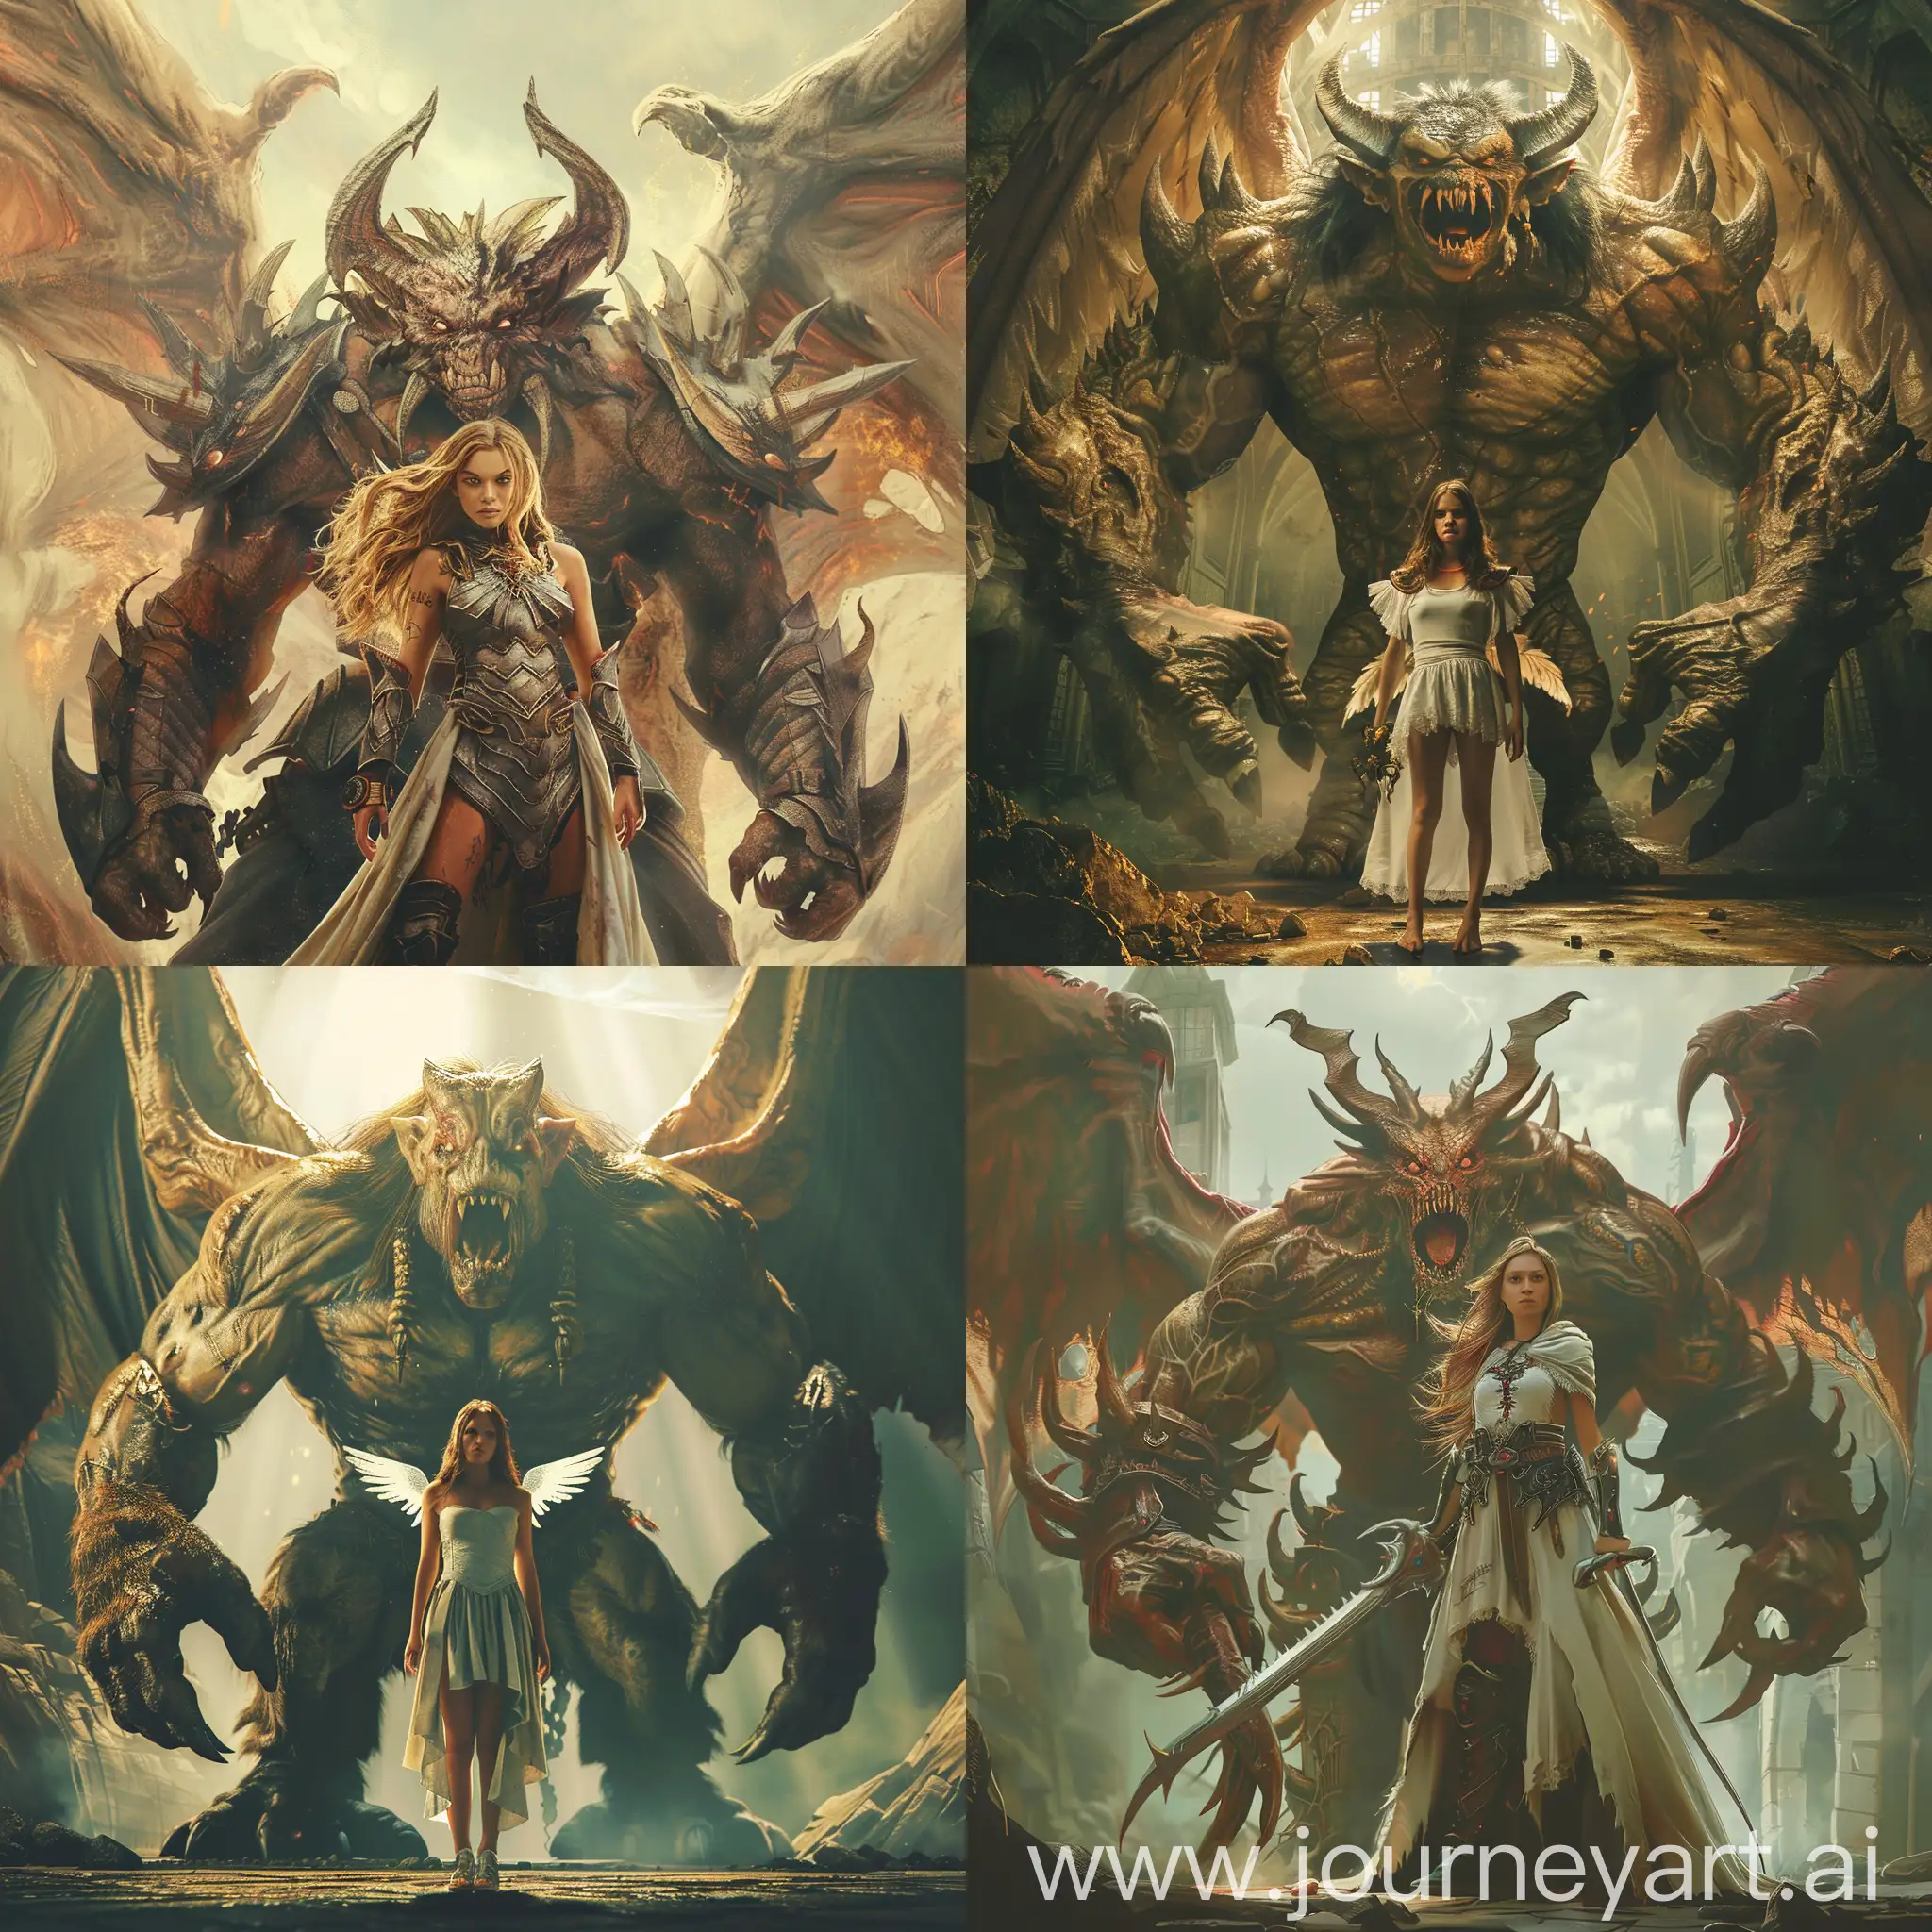 Courageous-Female-Angel-Warrior-Confronts-Monstrous-Evil-Demon